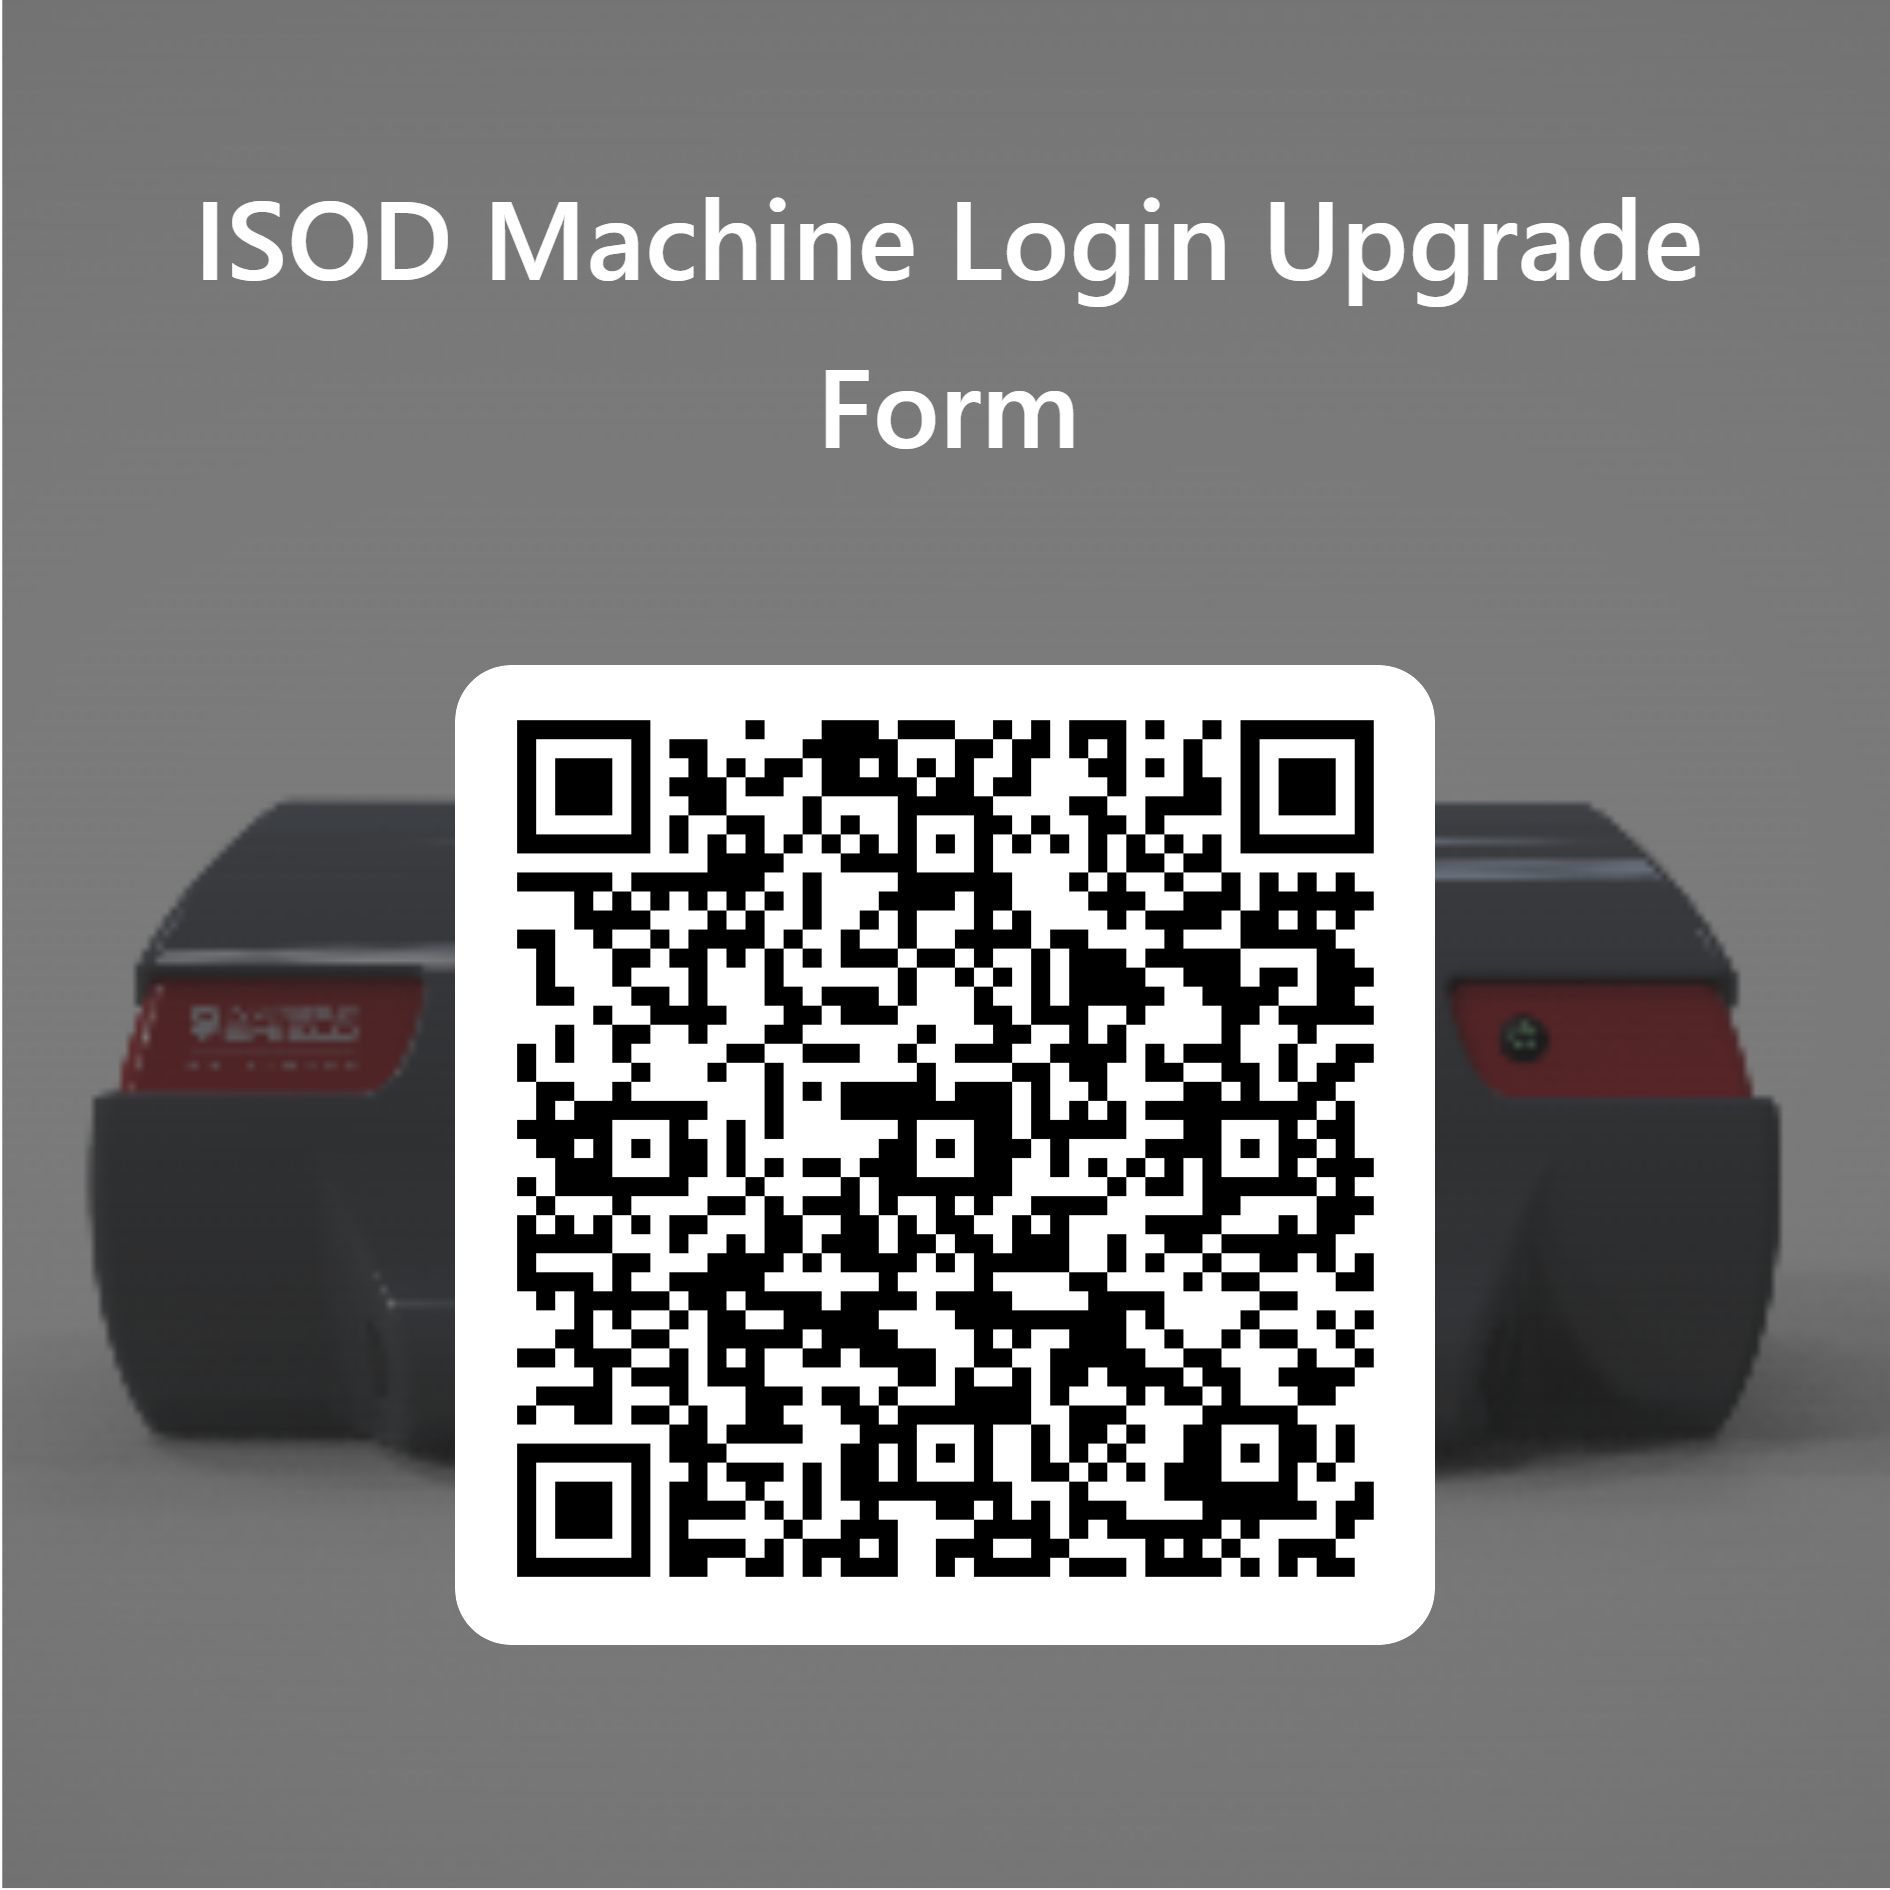 Formulário de Atualização de Acesso à Máquina ISOD